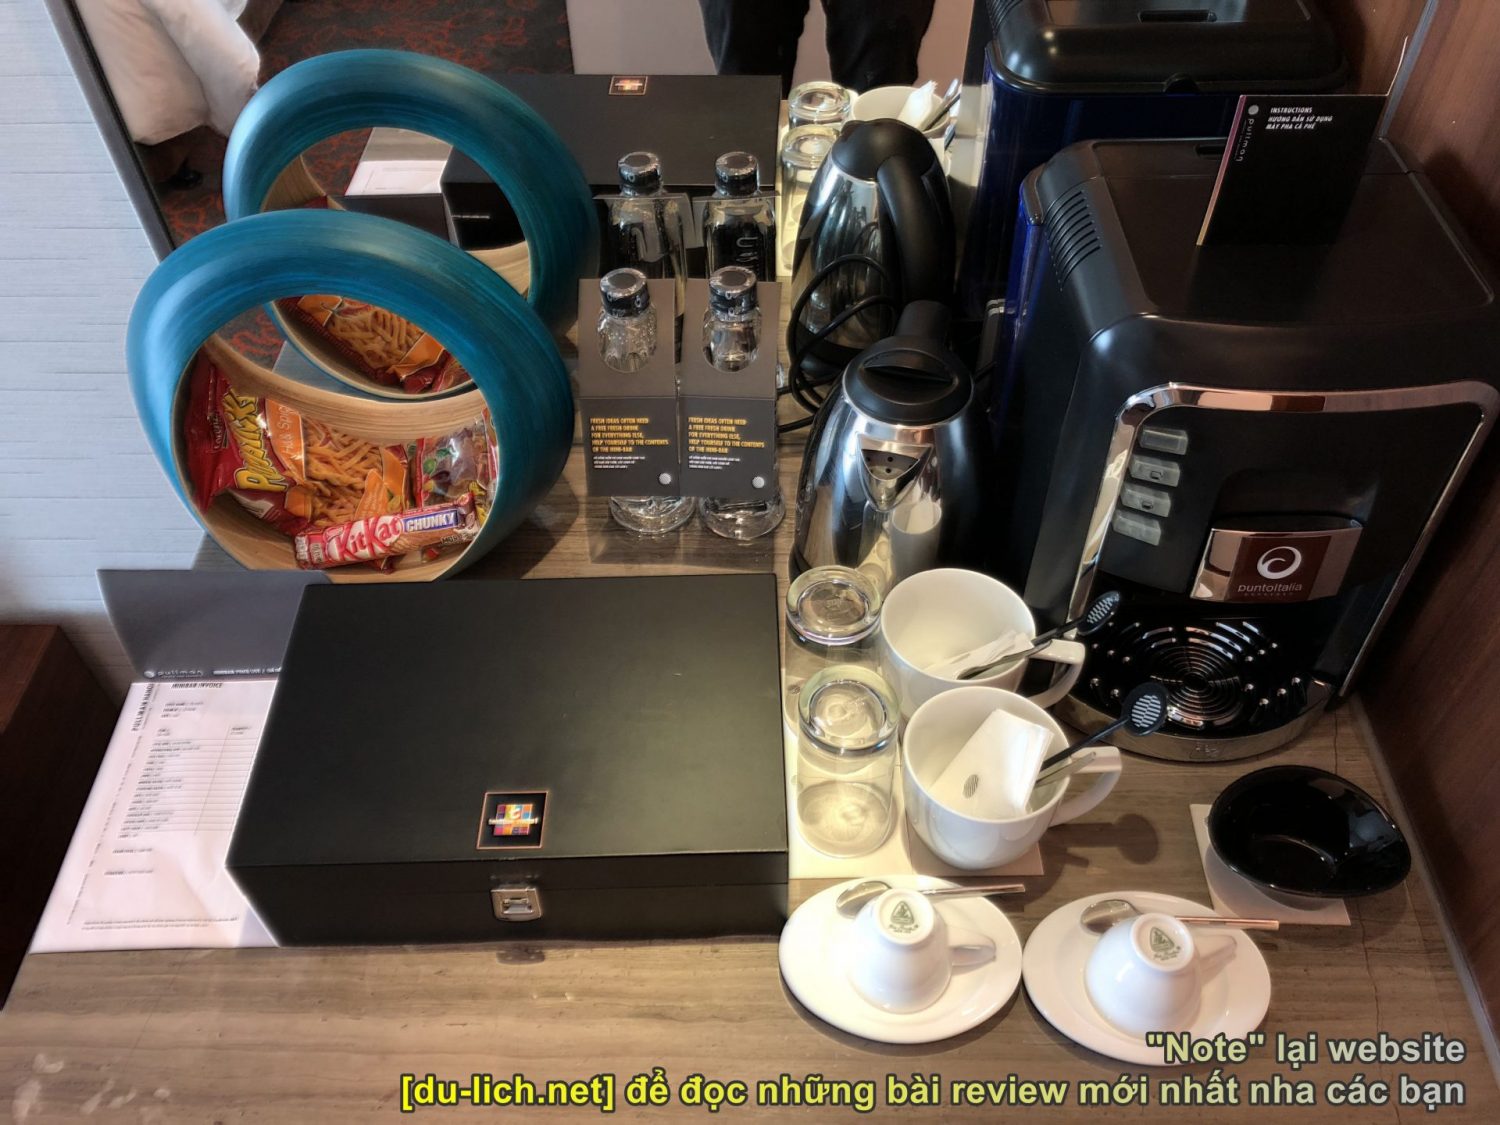 Những món đồ khách có thể lấy của khách sạn đem về: cà phê, trà... nếu không dùng thì có thể cho vào túi